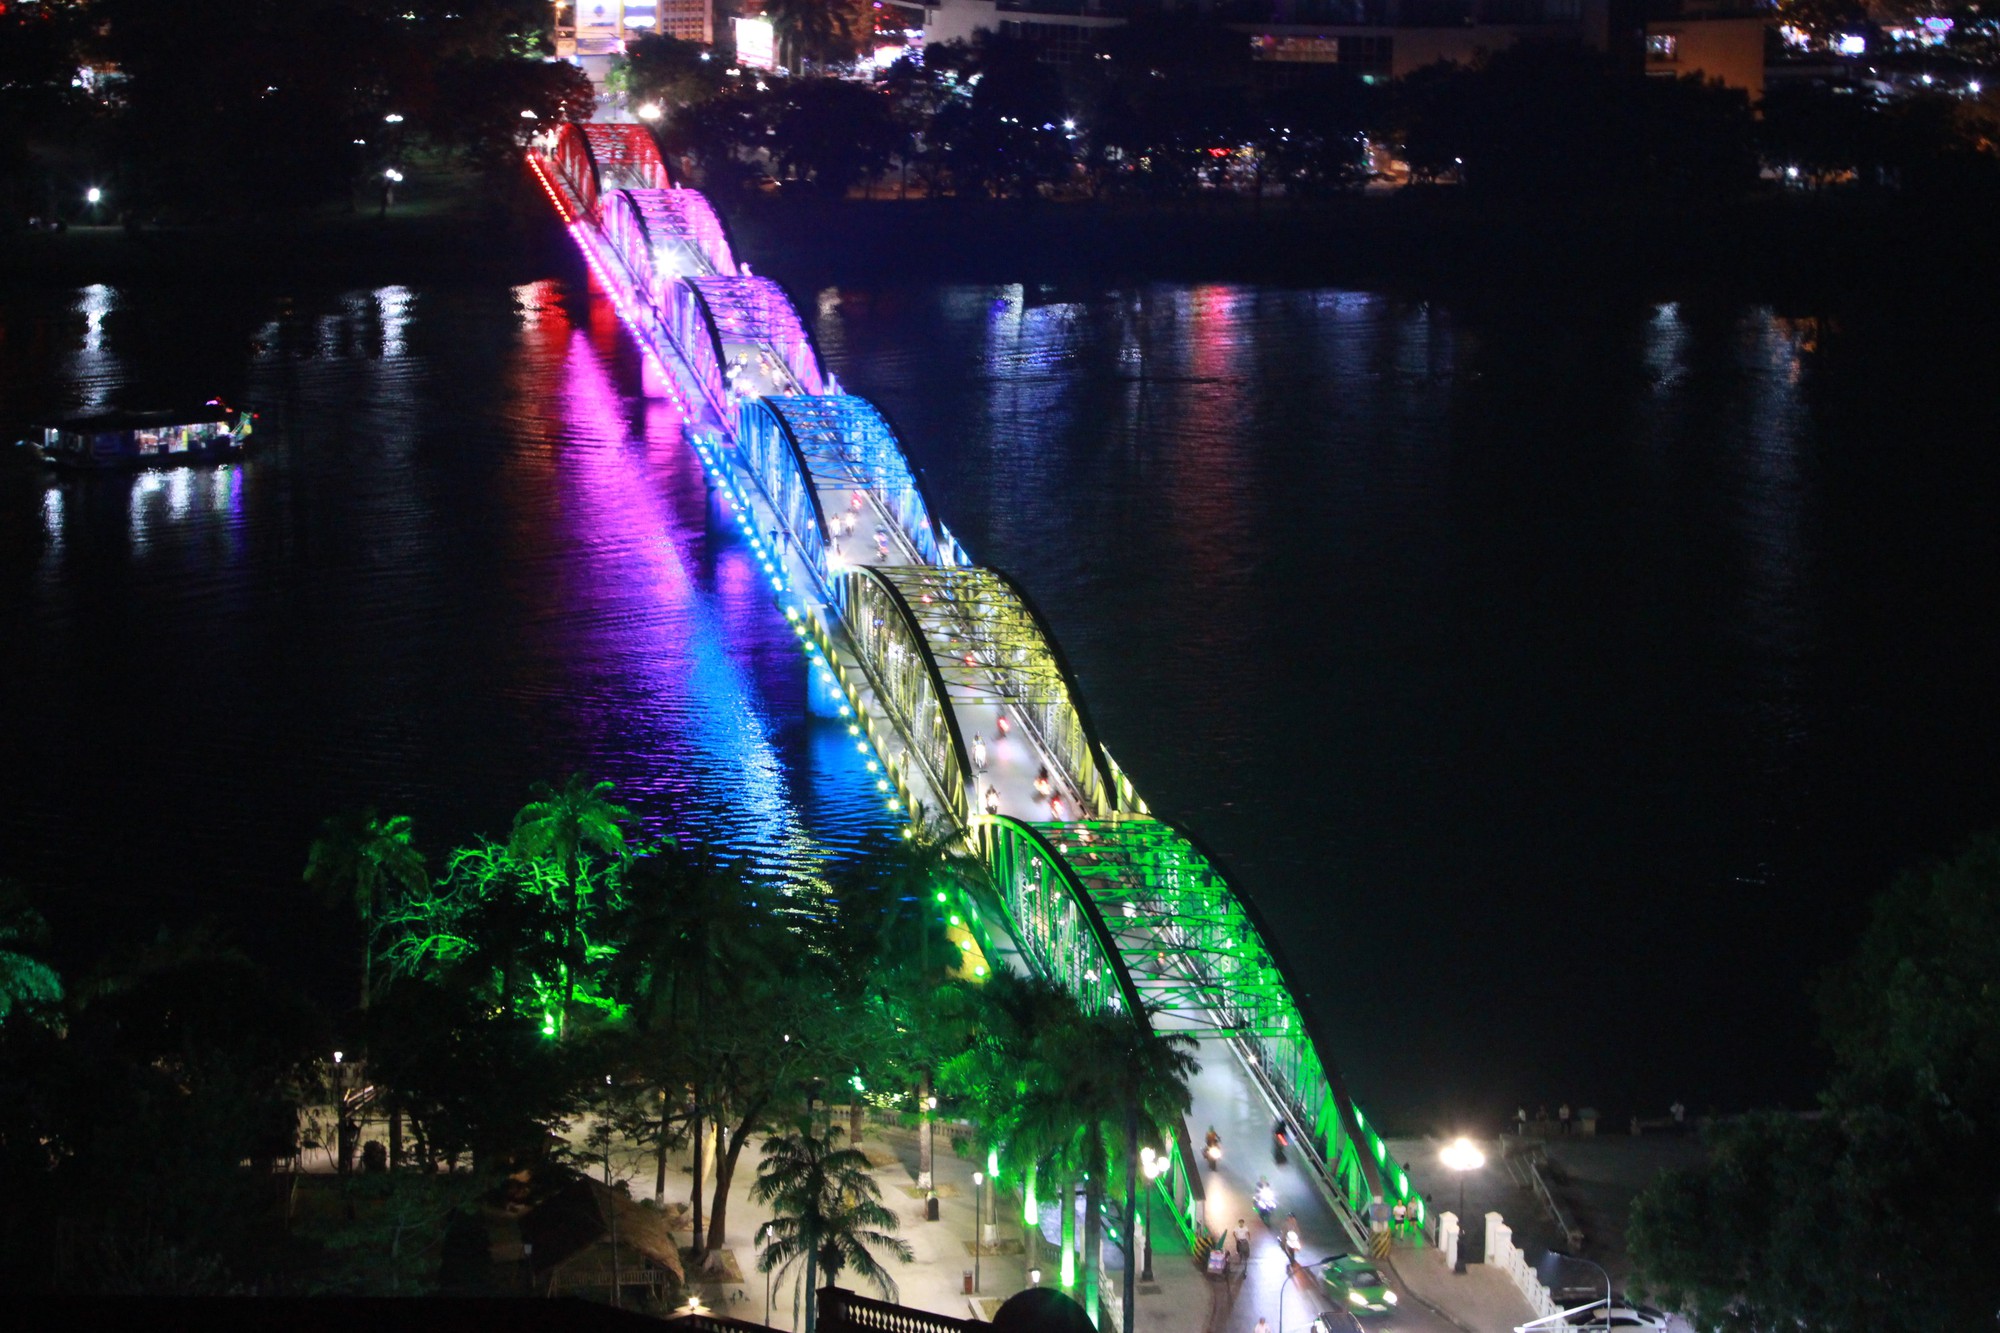 Hãy cùng ngắm nhìn cây cầu Trường Tiền Huế vào buổi tối, khi thành phố lung linh ánh đèn. Bức tranh tổng thể của cây cầu sẽ khiến bạn cảm nhận được sự độc đáo và nên thơ của Huế đêm.